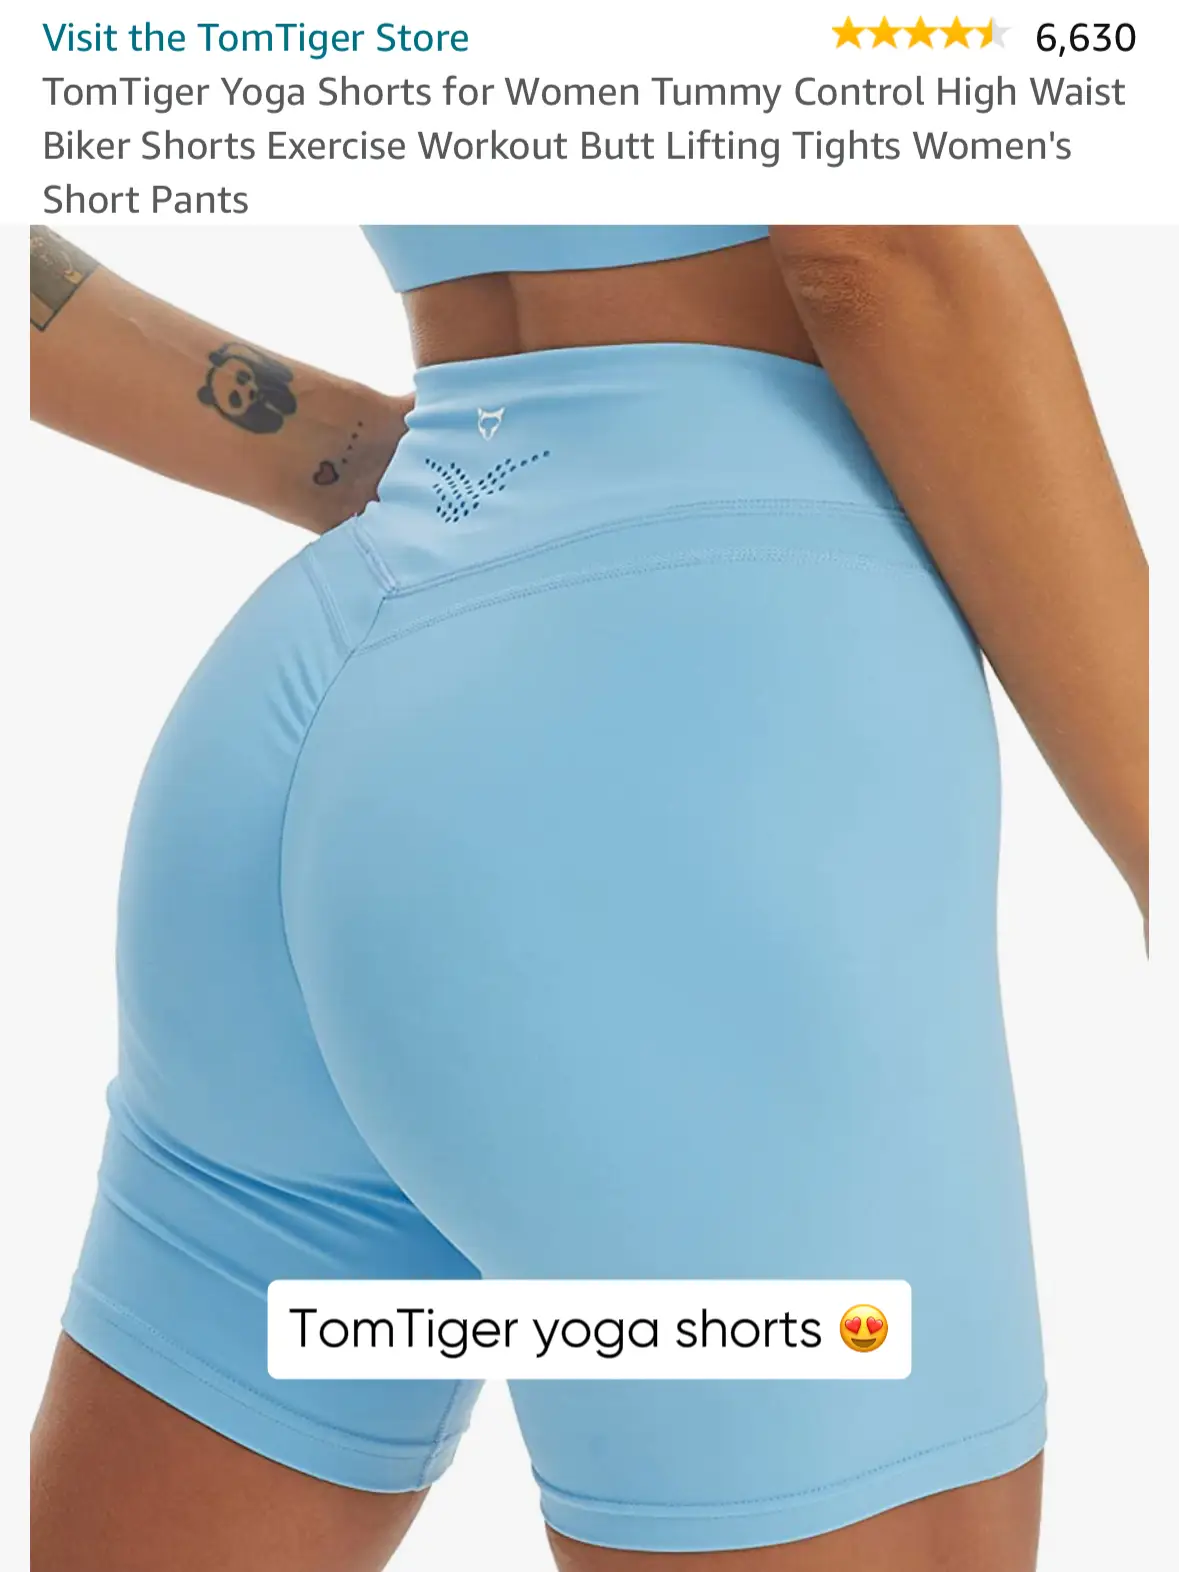 Women's Short Leggings Criss Cross Waist Tummy Control Butt Lift High Waist  Yoga Fitness Gym Workout Shorts Bottoms Black Red Blue Sports Activewear H